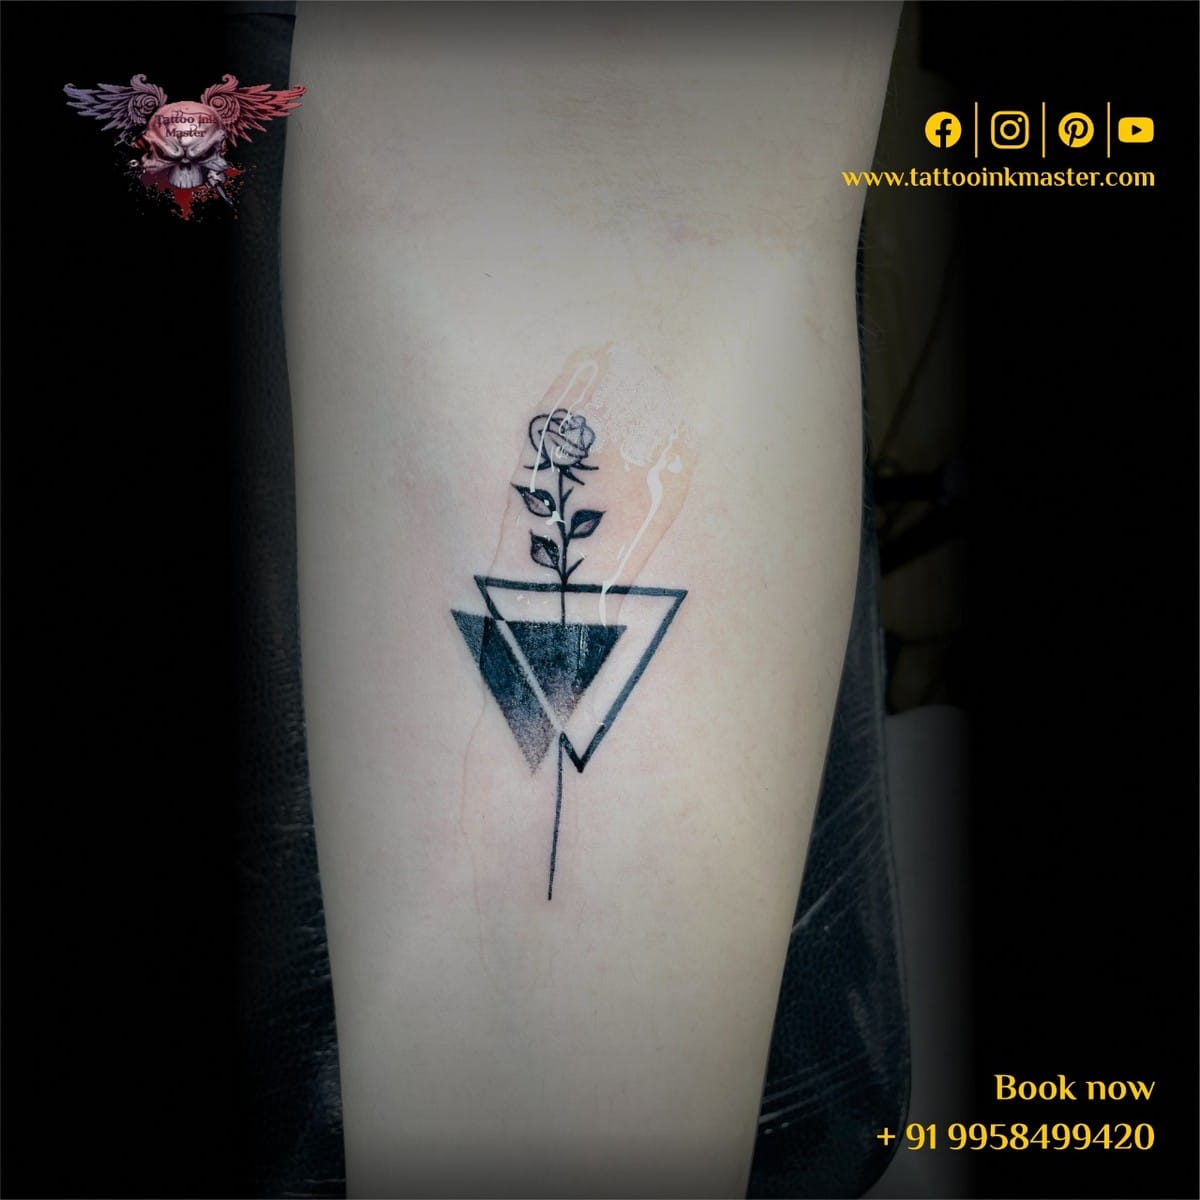 Tattoo | Hand tattoos, Tattoos, Triangle tattoo